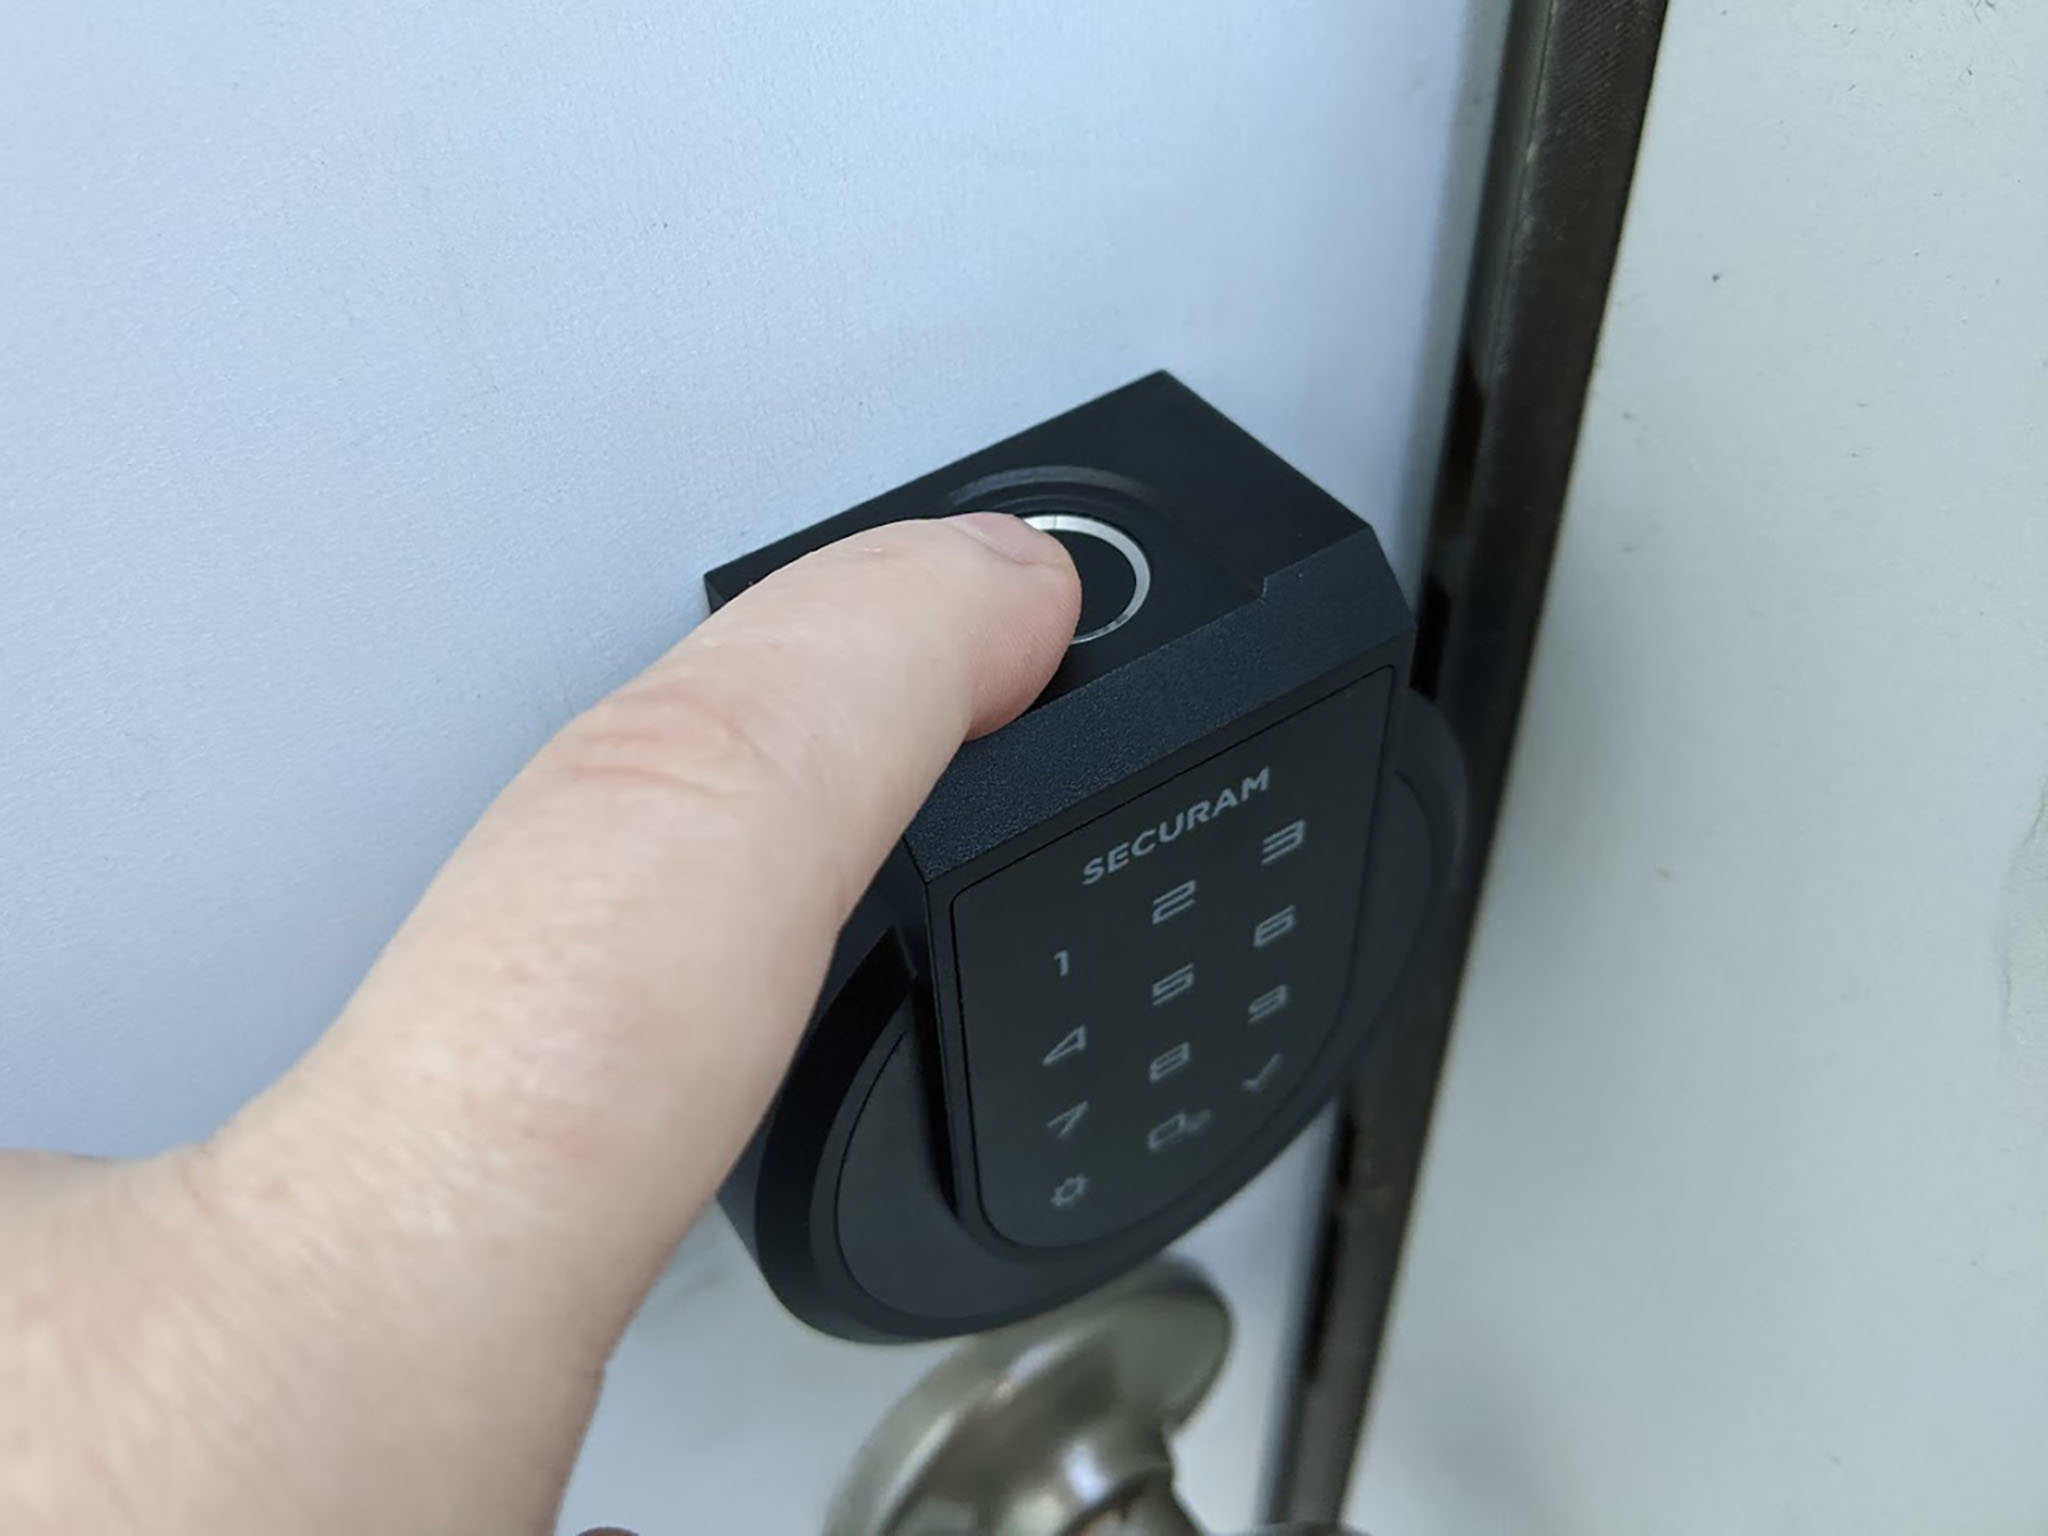 Securam Touch Smart Lock Fingerprint Reader